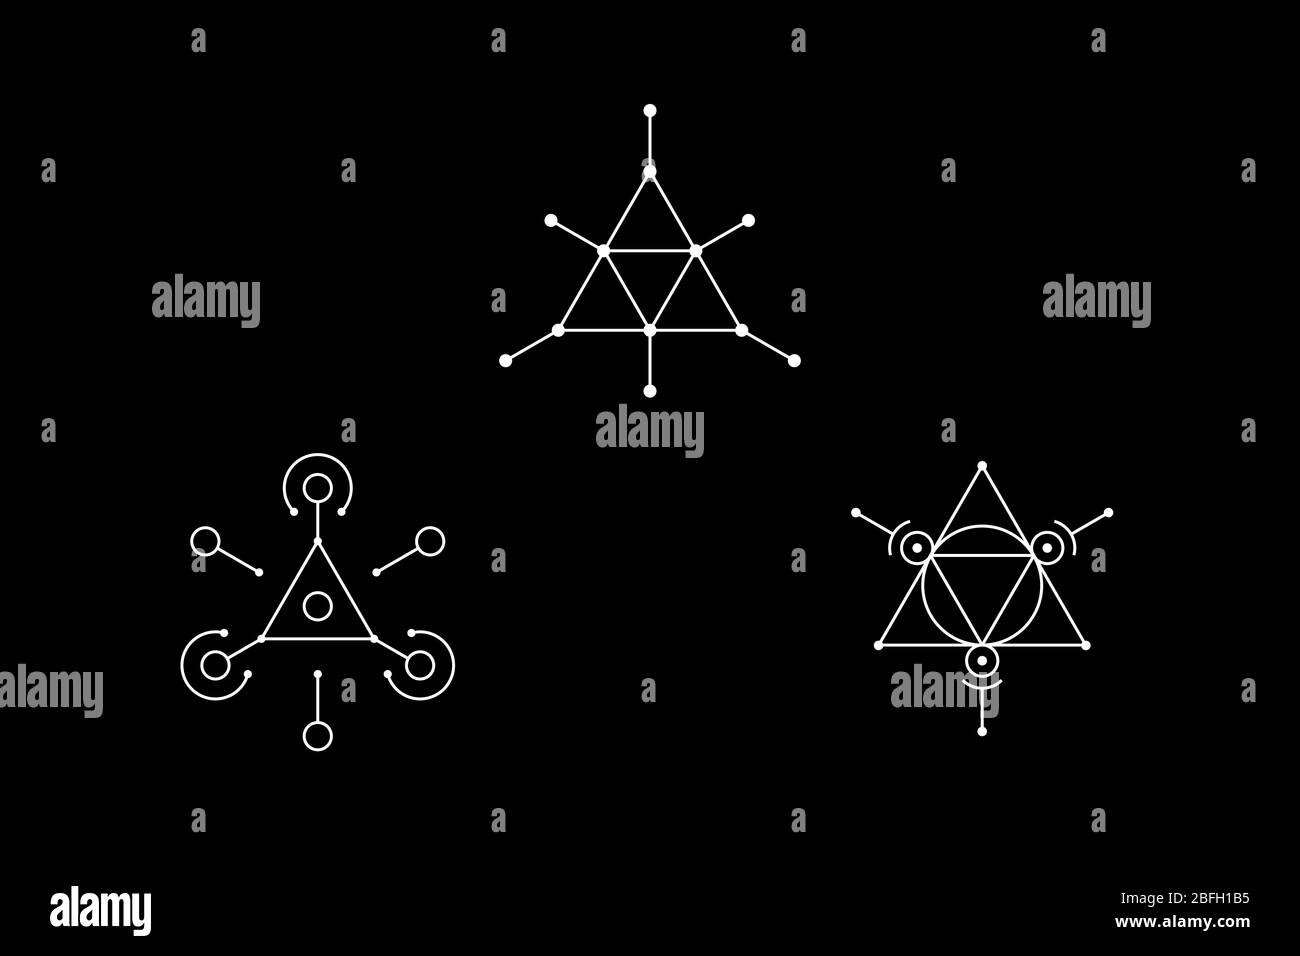 Simbolo bianco con geometria triangolare magica e cerchio inscritto. Illustrazione di un vettore. Illustrazione Vettoriale